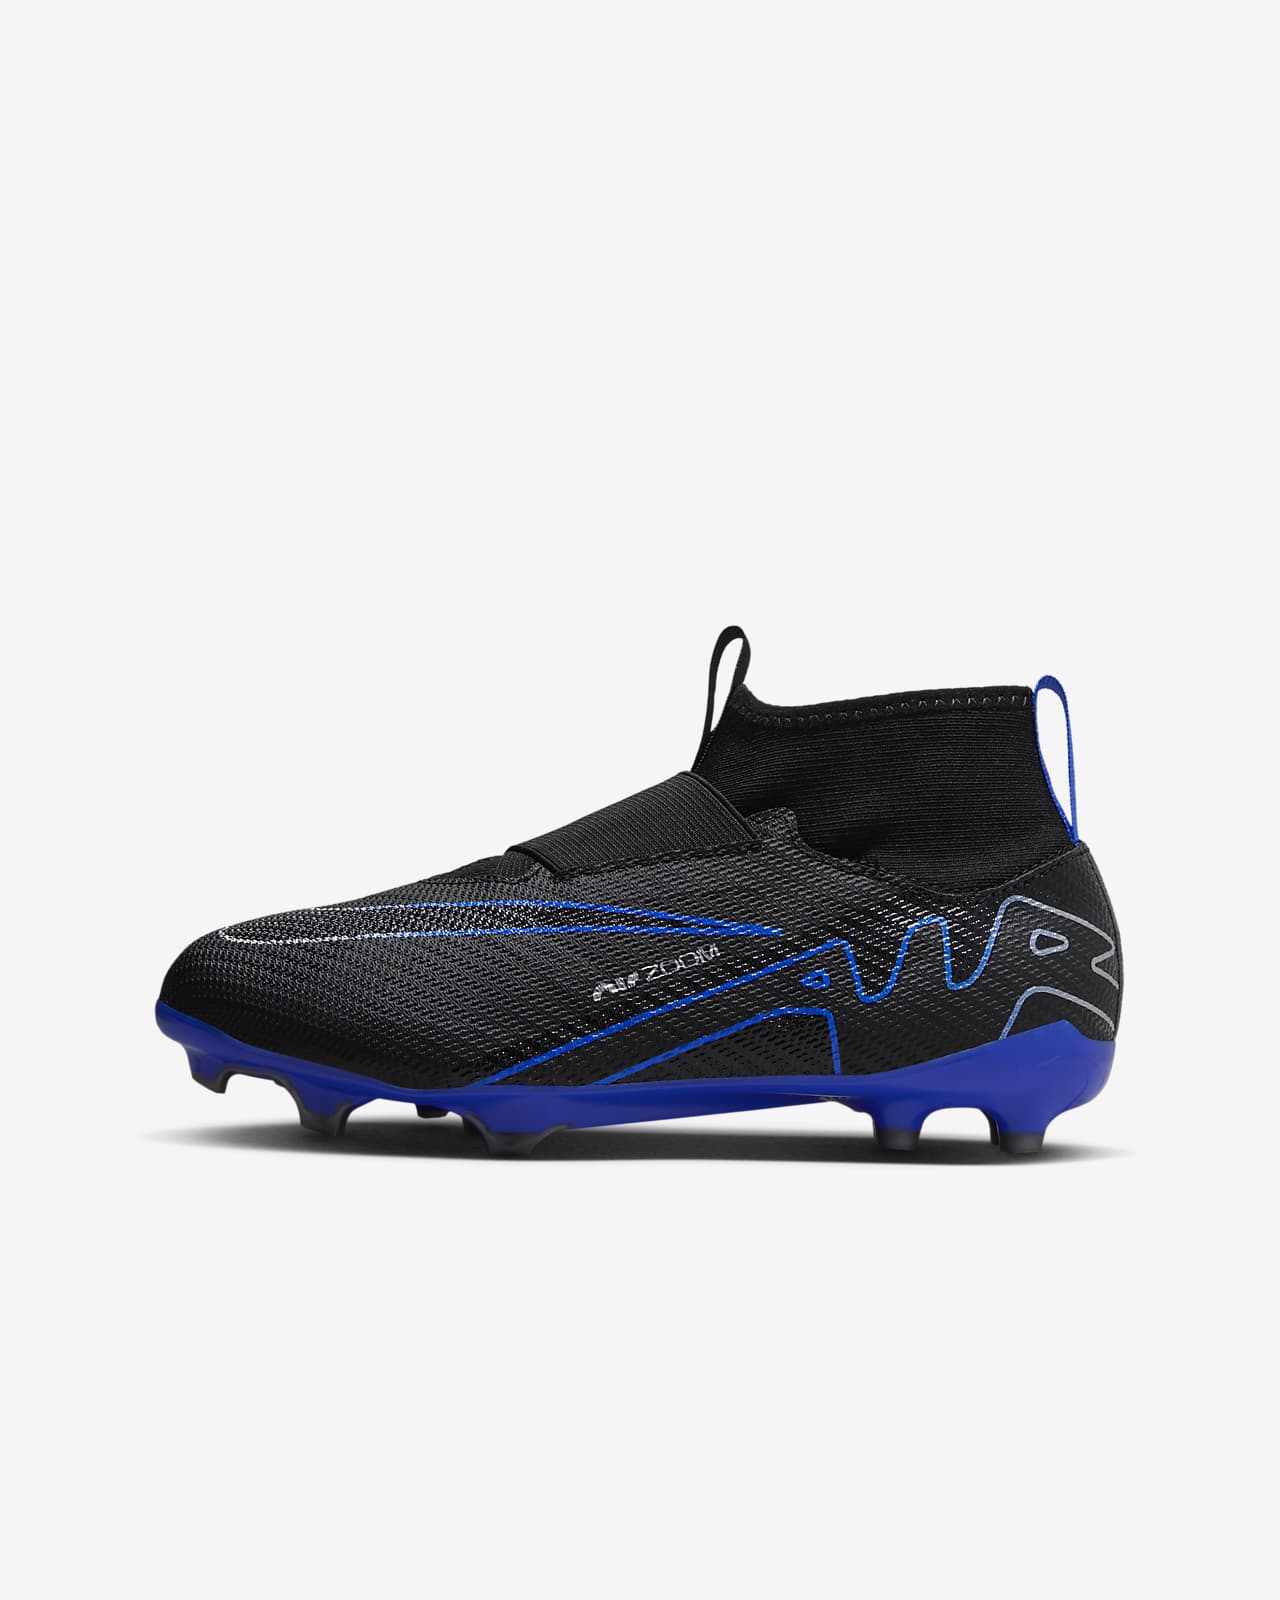 Ποδοσφαιρικά παπούτσια ψηλού προφίλ για σκληρές επιφάνειες Nike Jr. Mercurial Superfly 9 Pro για μικρά/μεγάλα παιδιά